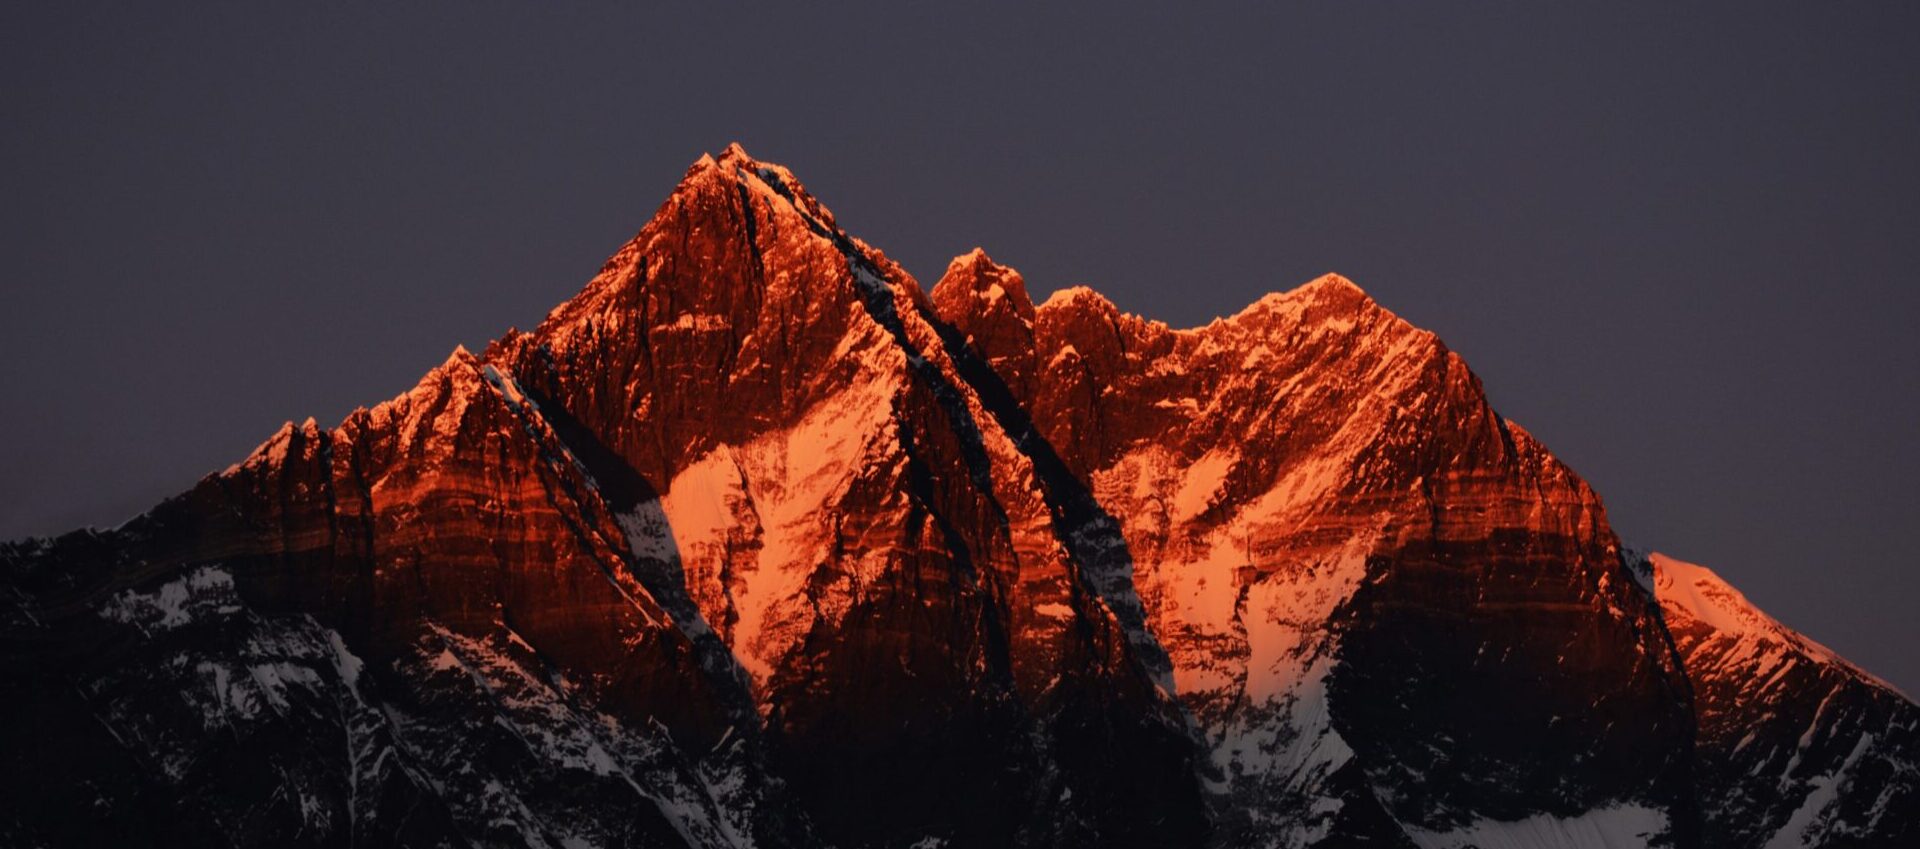 Mountain Lhotse 